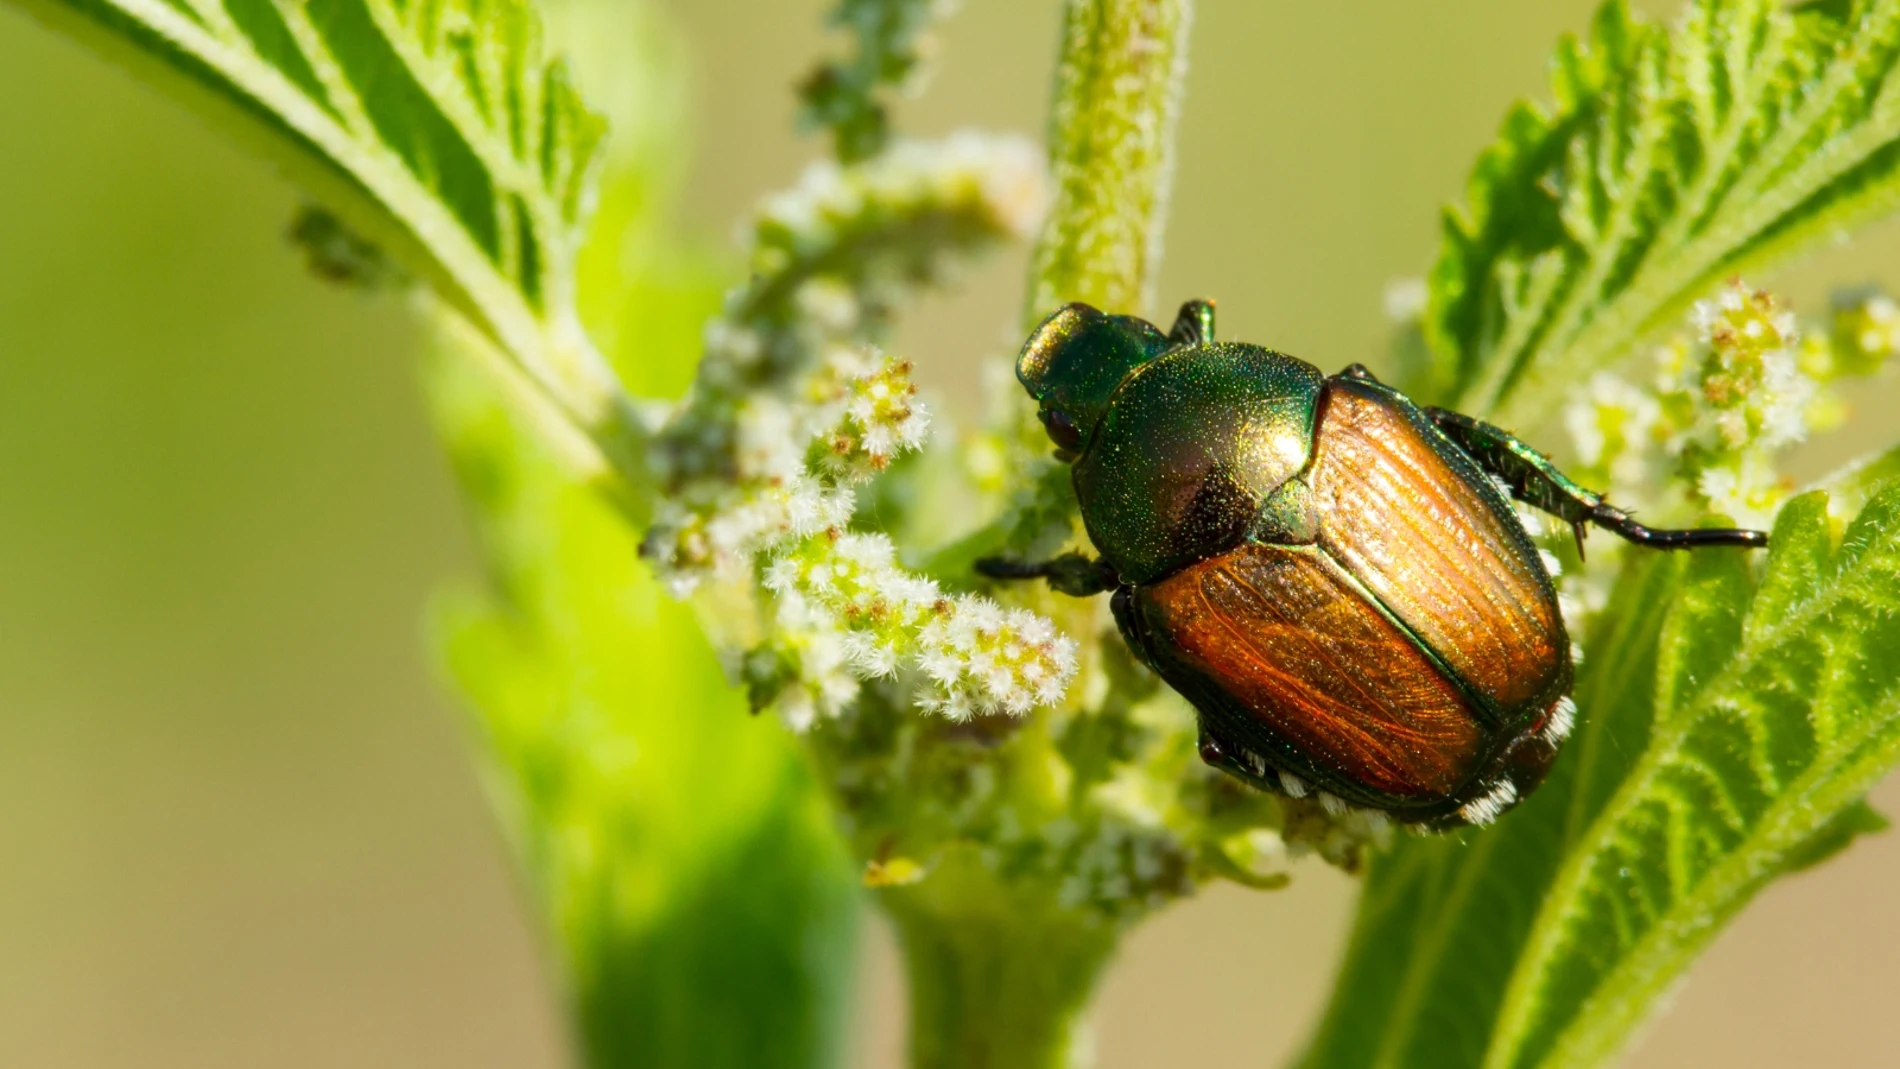 El declive de los insectos se debe a la pérdida de especies localmente más comunes, según un estudio